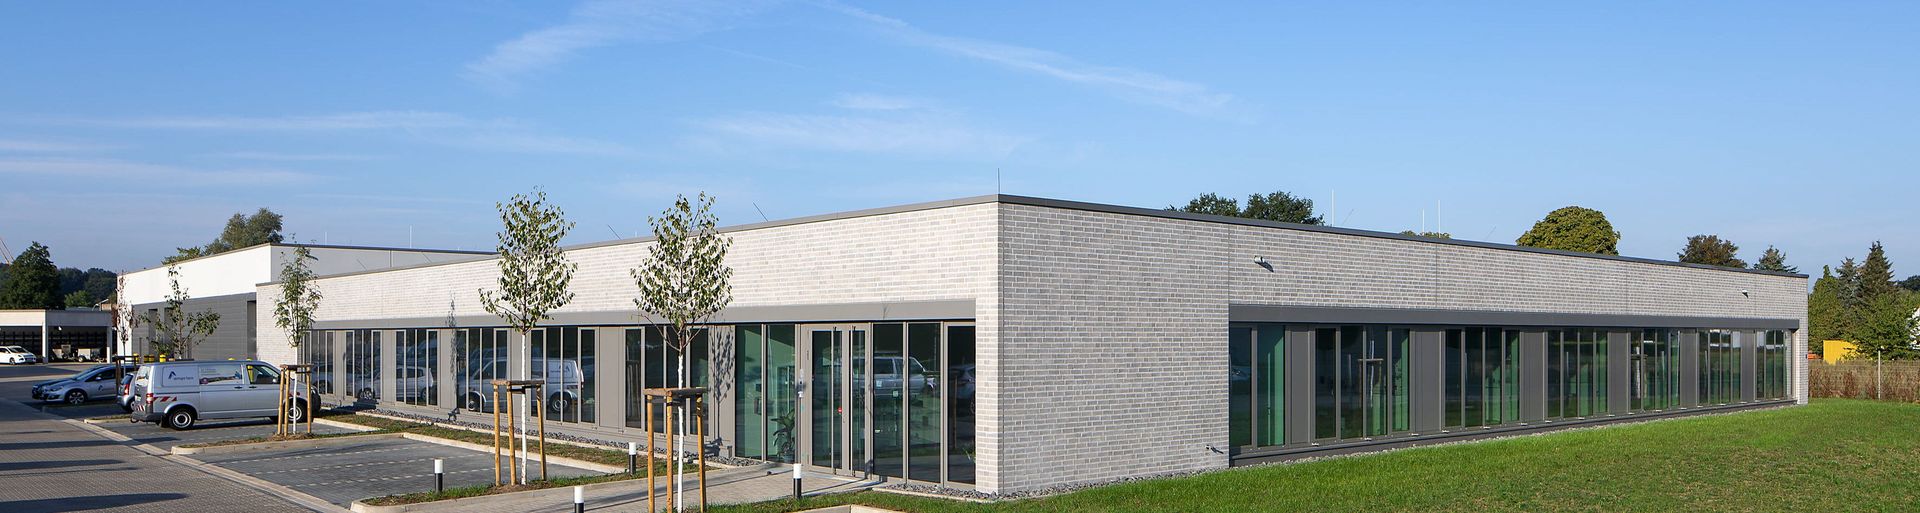 Übertragungsnetzbetreiber Amprion GmbH Standort Lotte, Kreis Steinfurt, Nordrhein-Westfalen - Außenansicht 